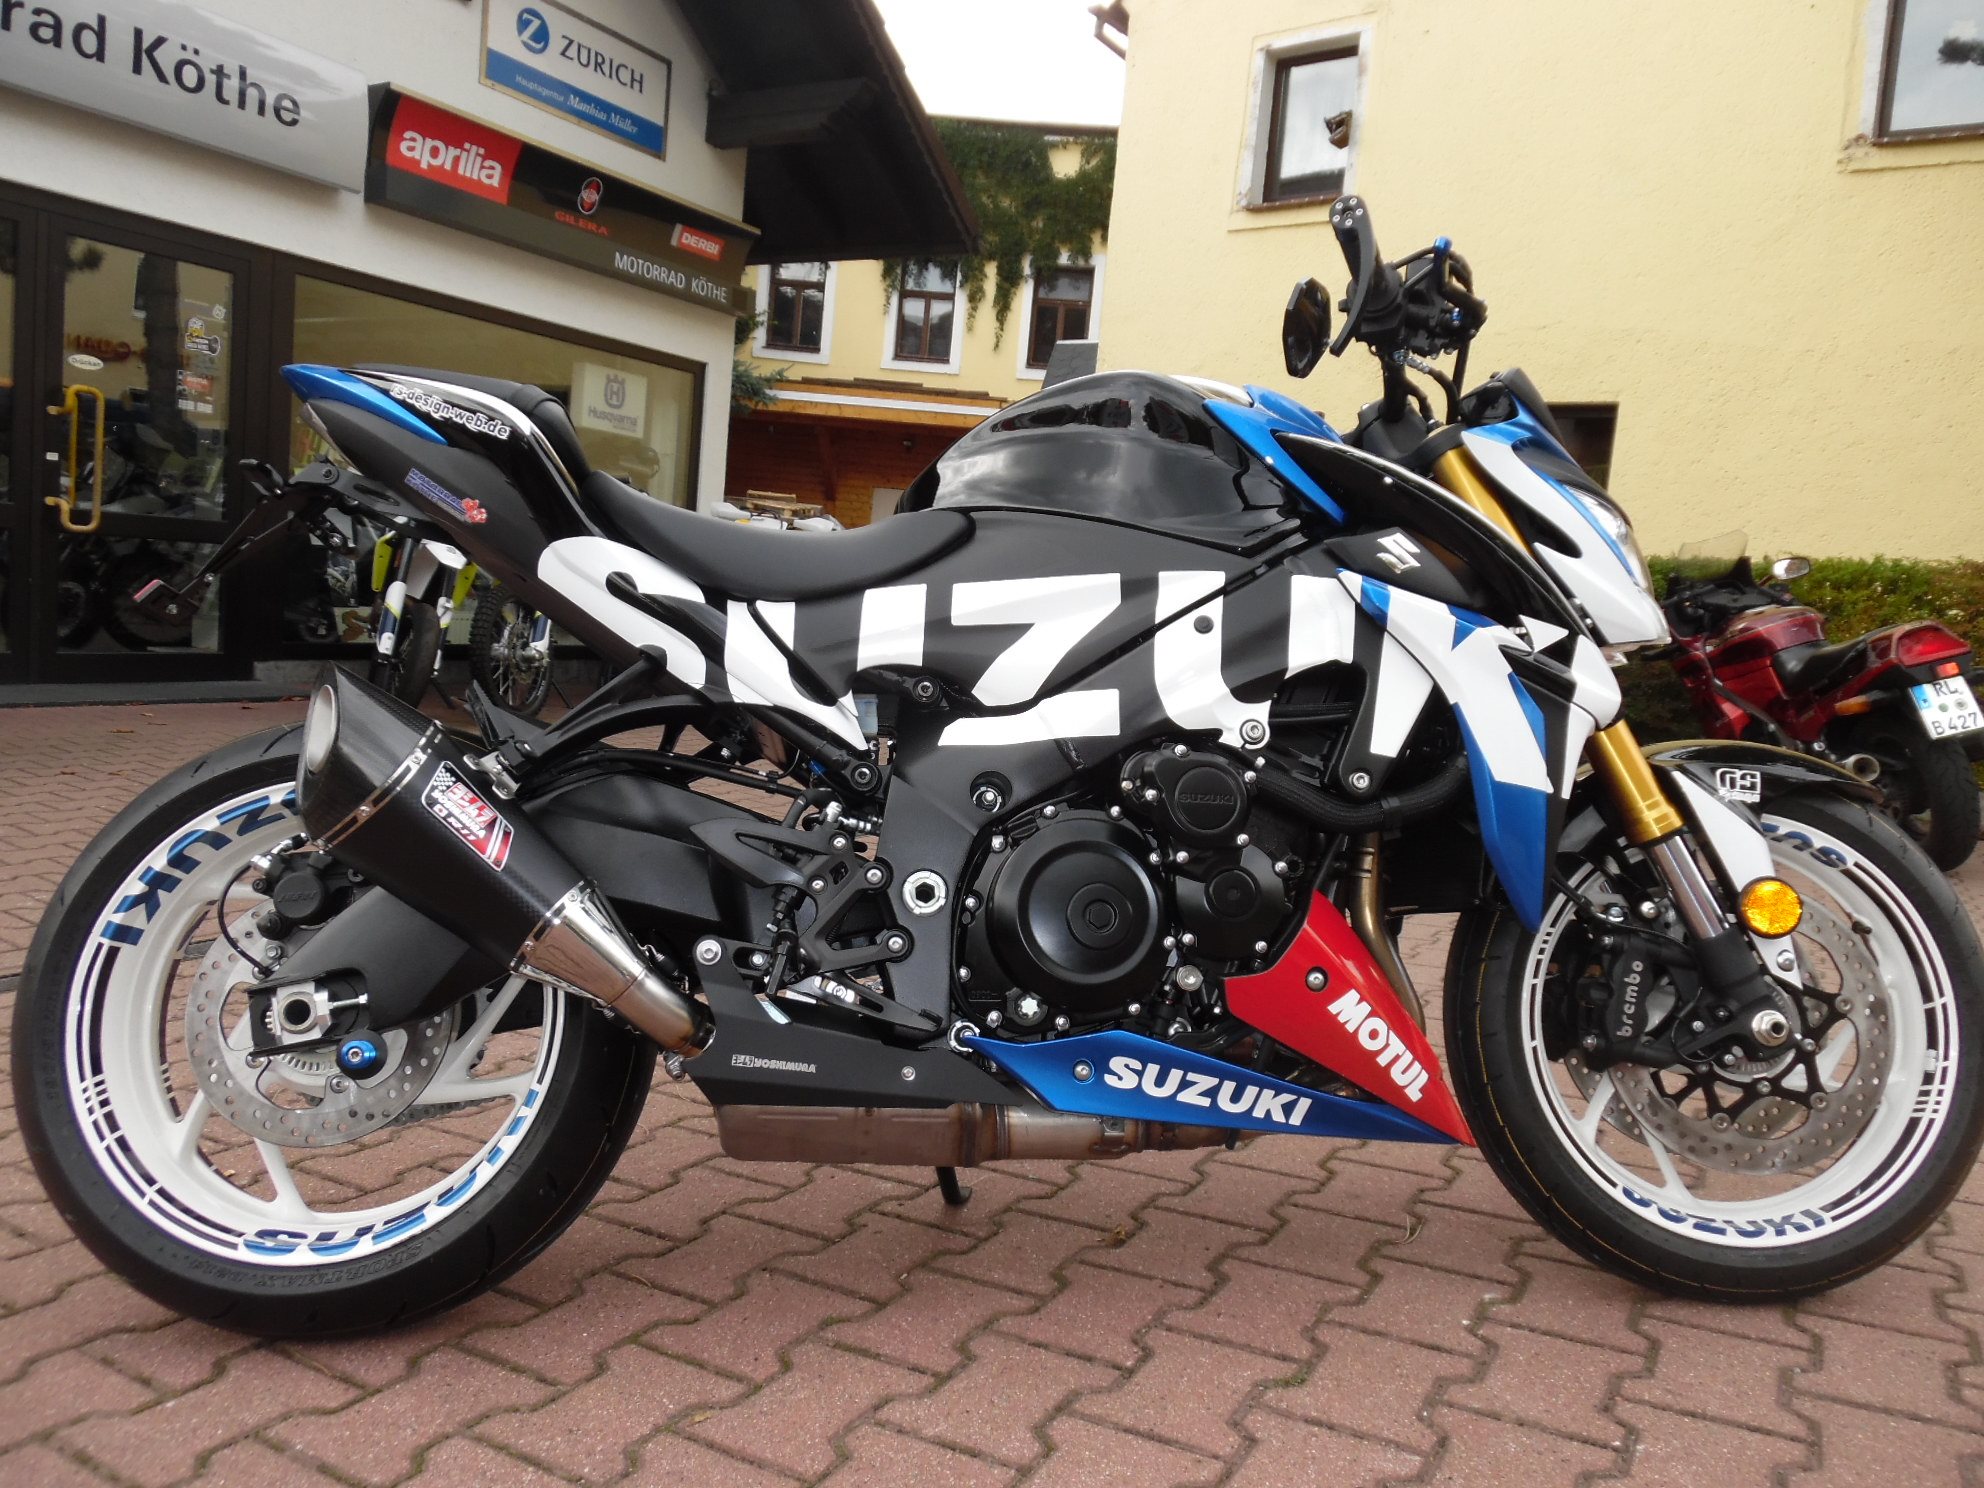 Umgebautes Motorrad Suzuki GSX-S1000 von Motorrad Köthe 